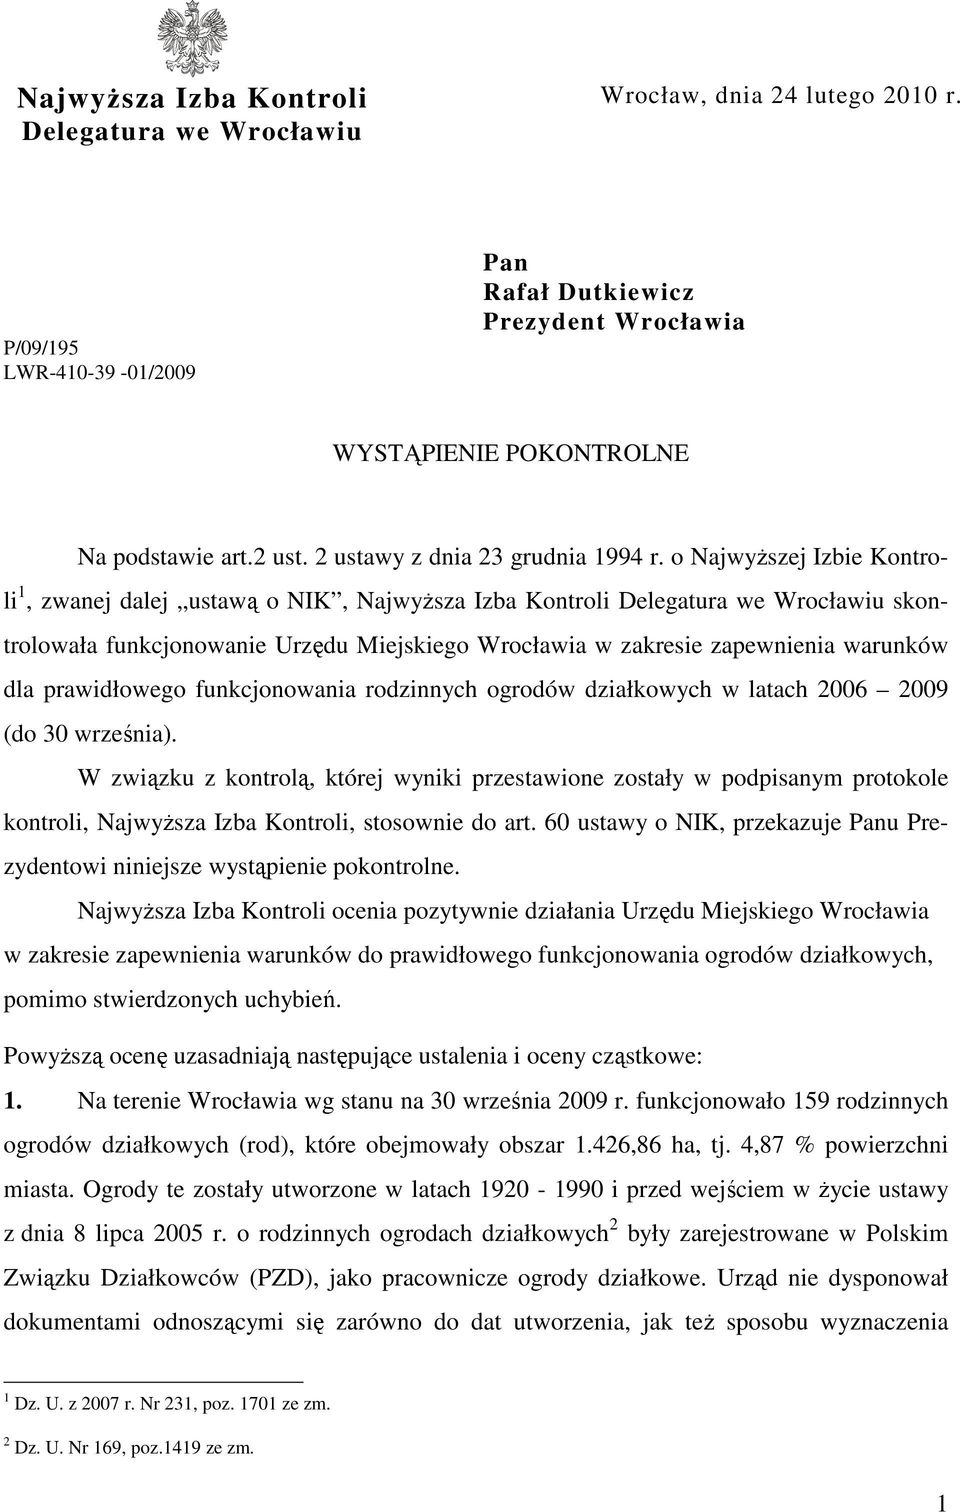 o NajwyŜszej Izbie Kontroli 1, zwanej dalej ustawą o NIK, NajwyŜsza Izba Kontroli Delegatura we Wrocławiu skontrolowała funkcjonowanie Urzędu Miejskiego Wrocławia w zakresie zapewnienia warunków dla